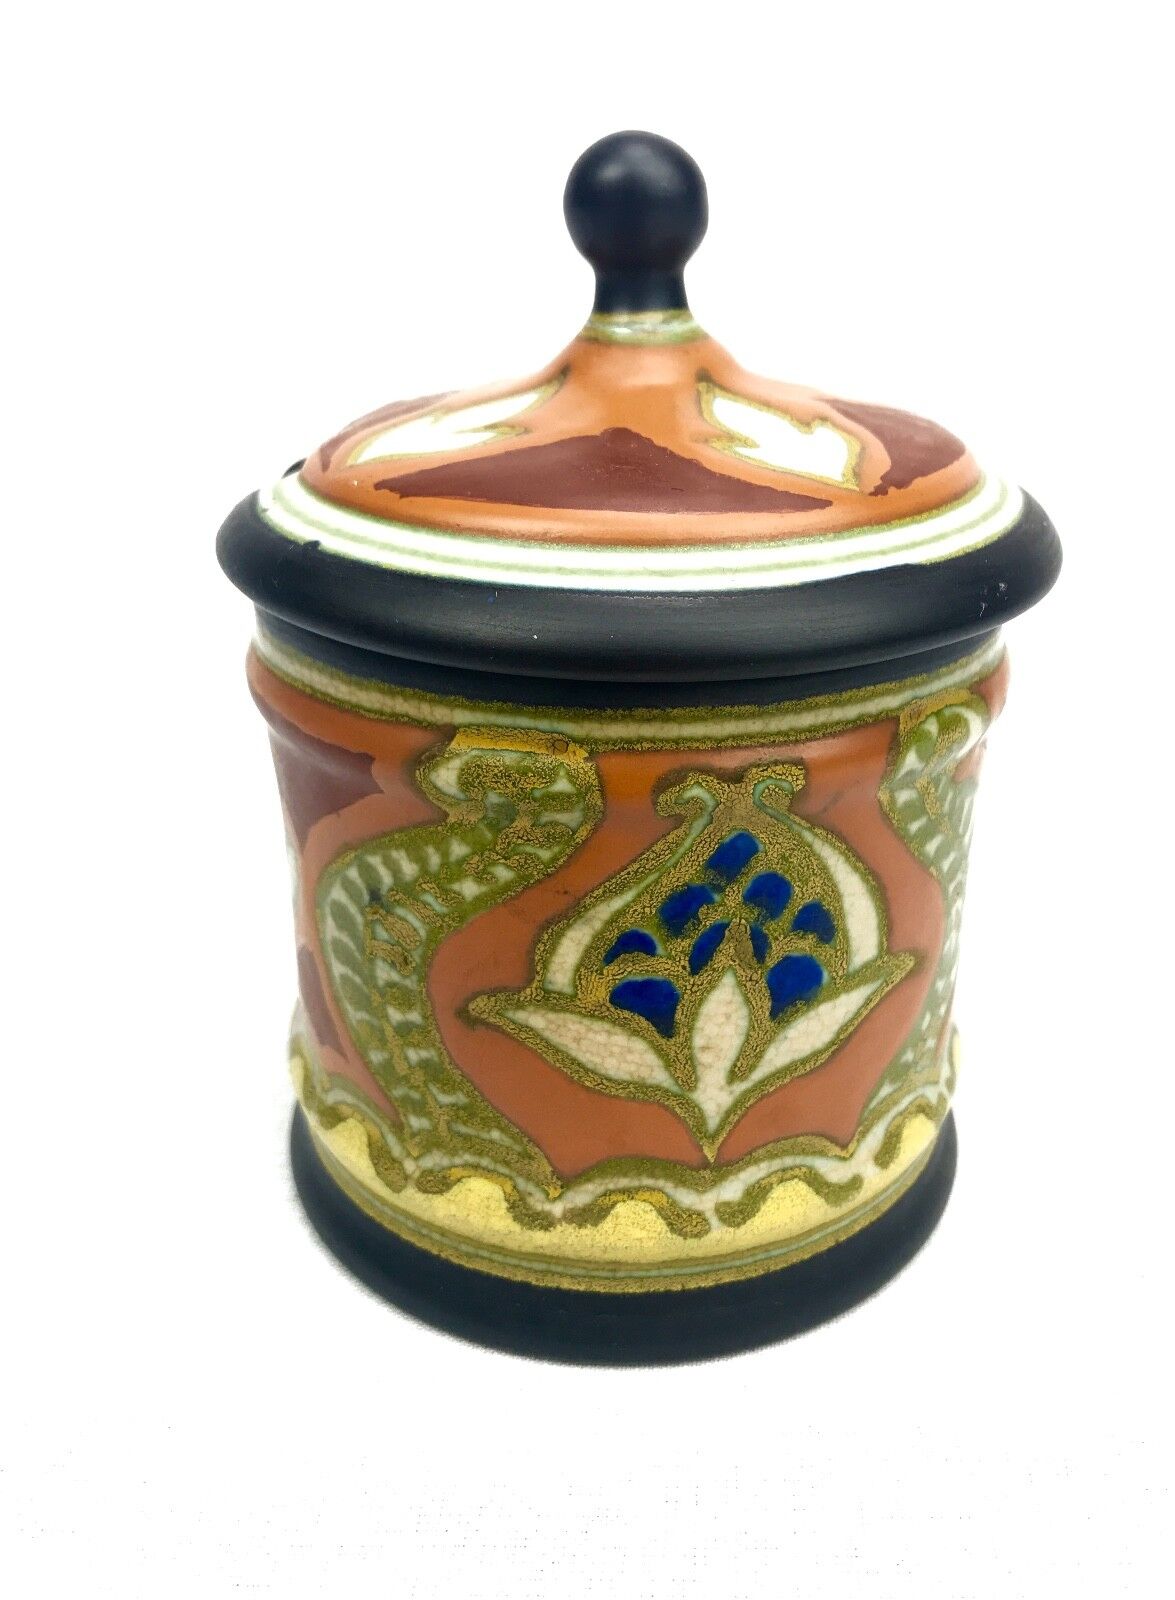 Gouda Pottery Condiment Jar / Vase / Pot / Art Deco / Orange / Brown / Blue